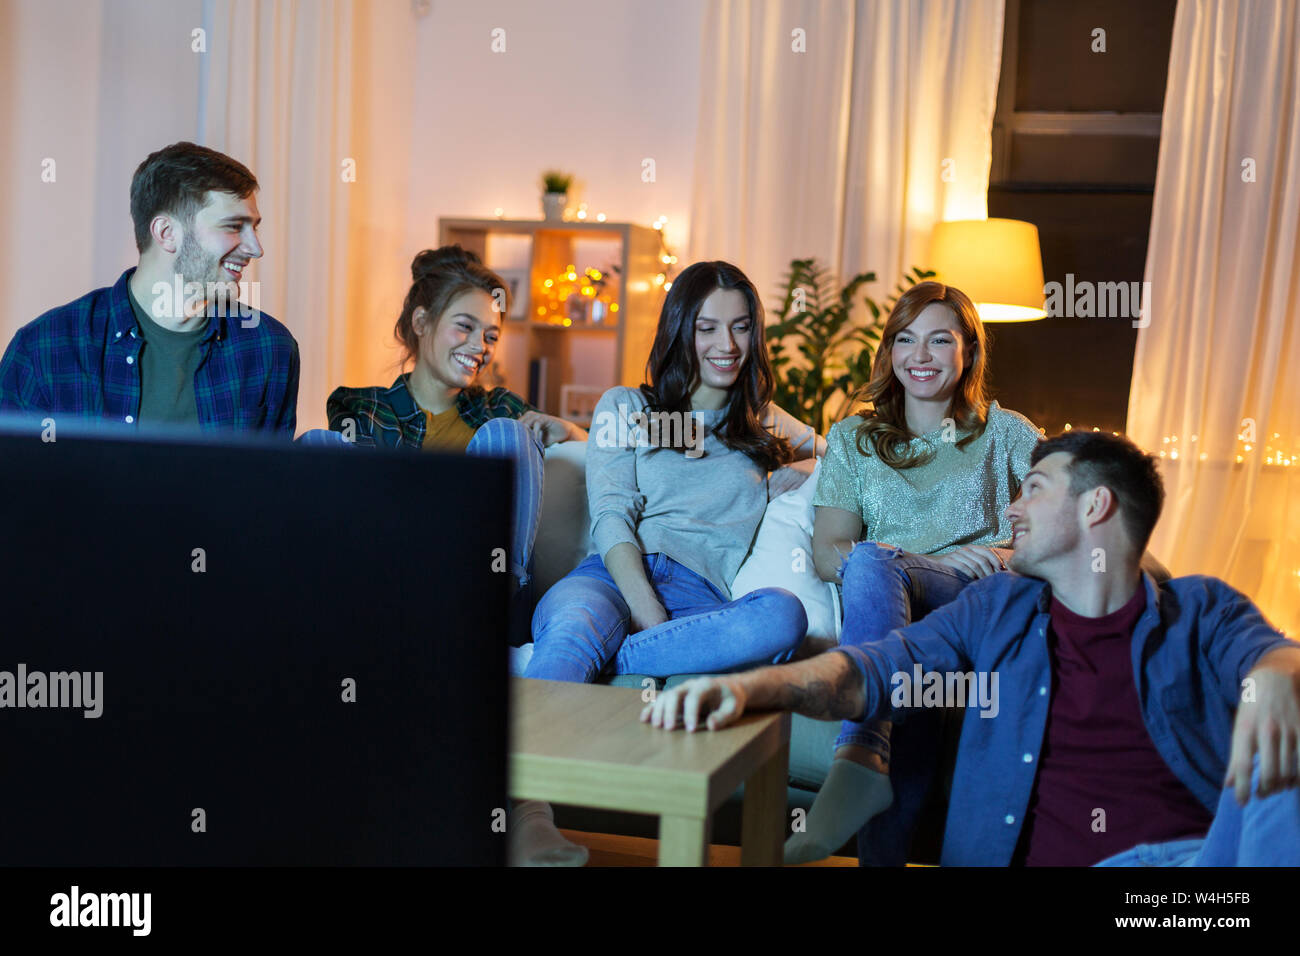 Gerne Freunde tv zu Hause Fernsehen in Abend Stockfotografie - Alamy